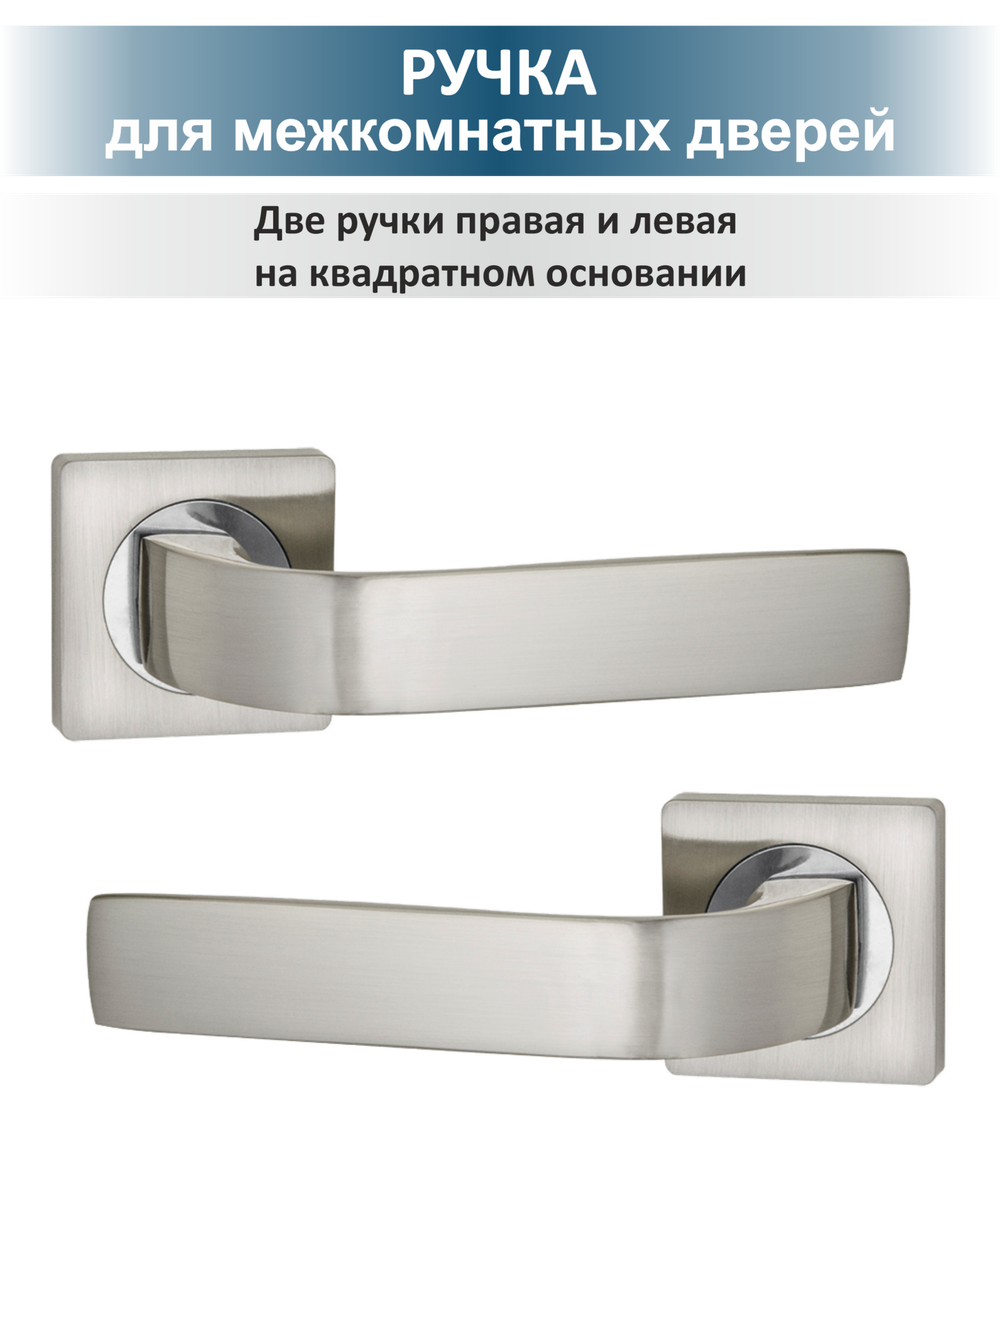 Комплект дверной фурнитуры сантехнический EVO